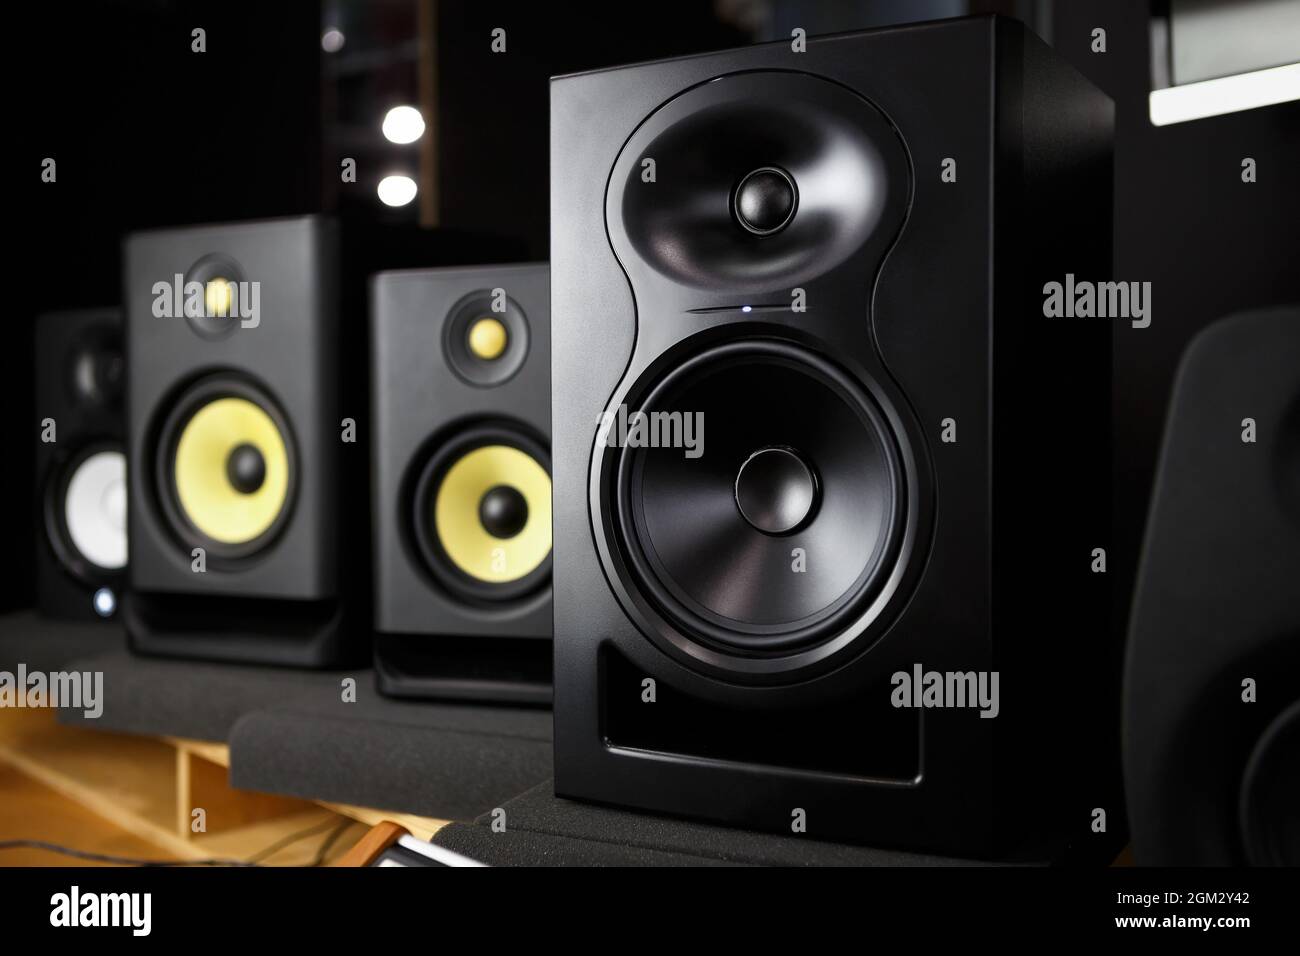 Kaufen Sie neue Lautsprecher. Professionelle Studiomonitore im  Musikgeschäft. HiFi-Lautsprecher für HiFi-Soundsystem, Musiker oder  Tonstudio Stockfotografie - Alamy